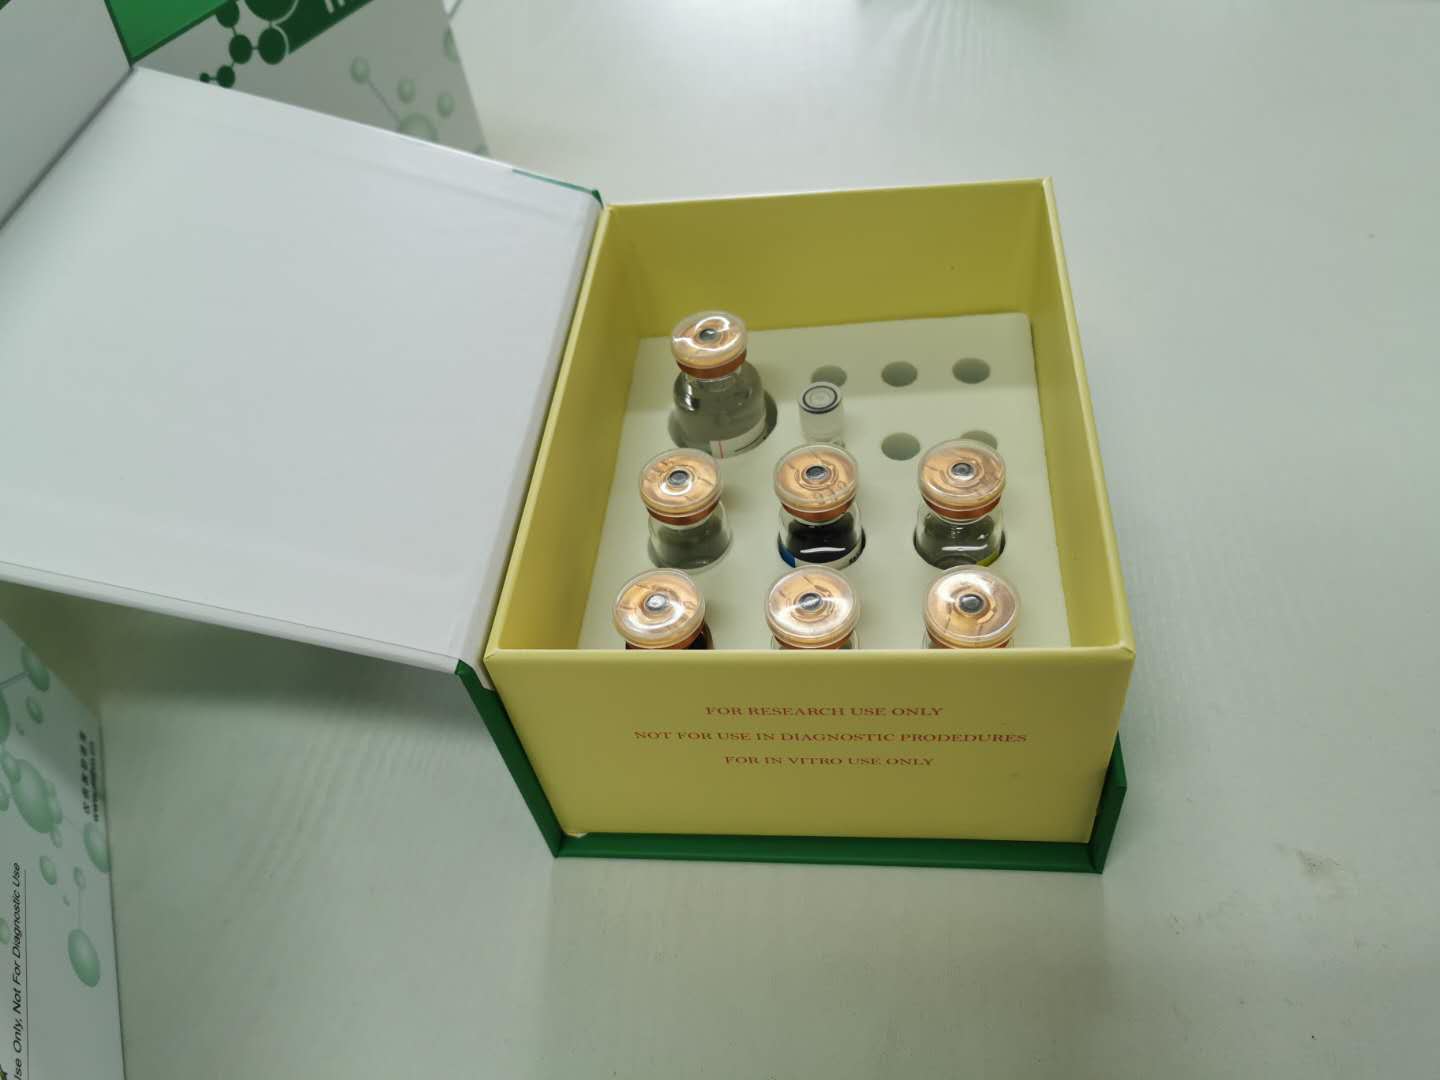 RLAⅠ试剂盒产品用途